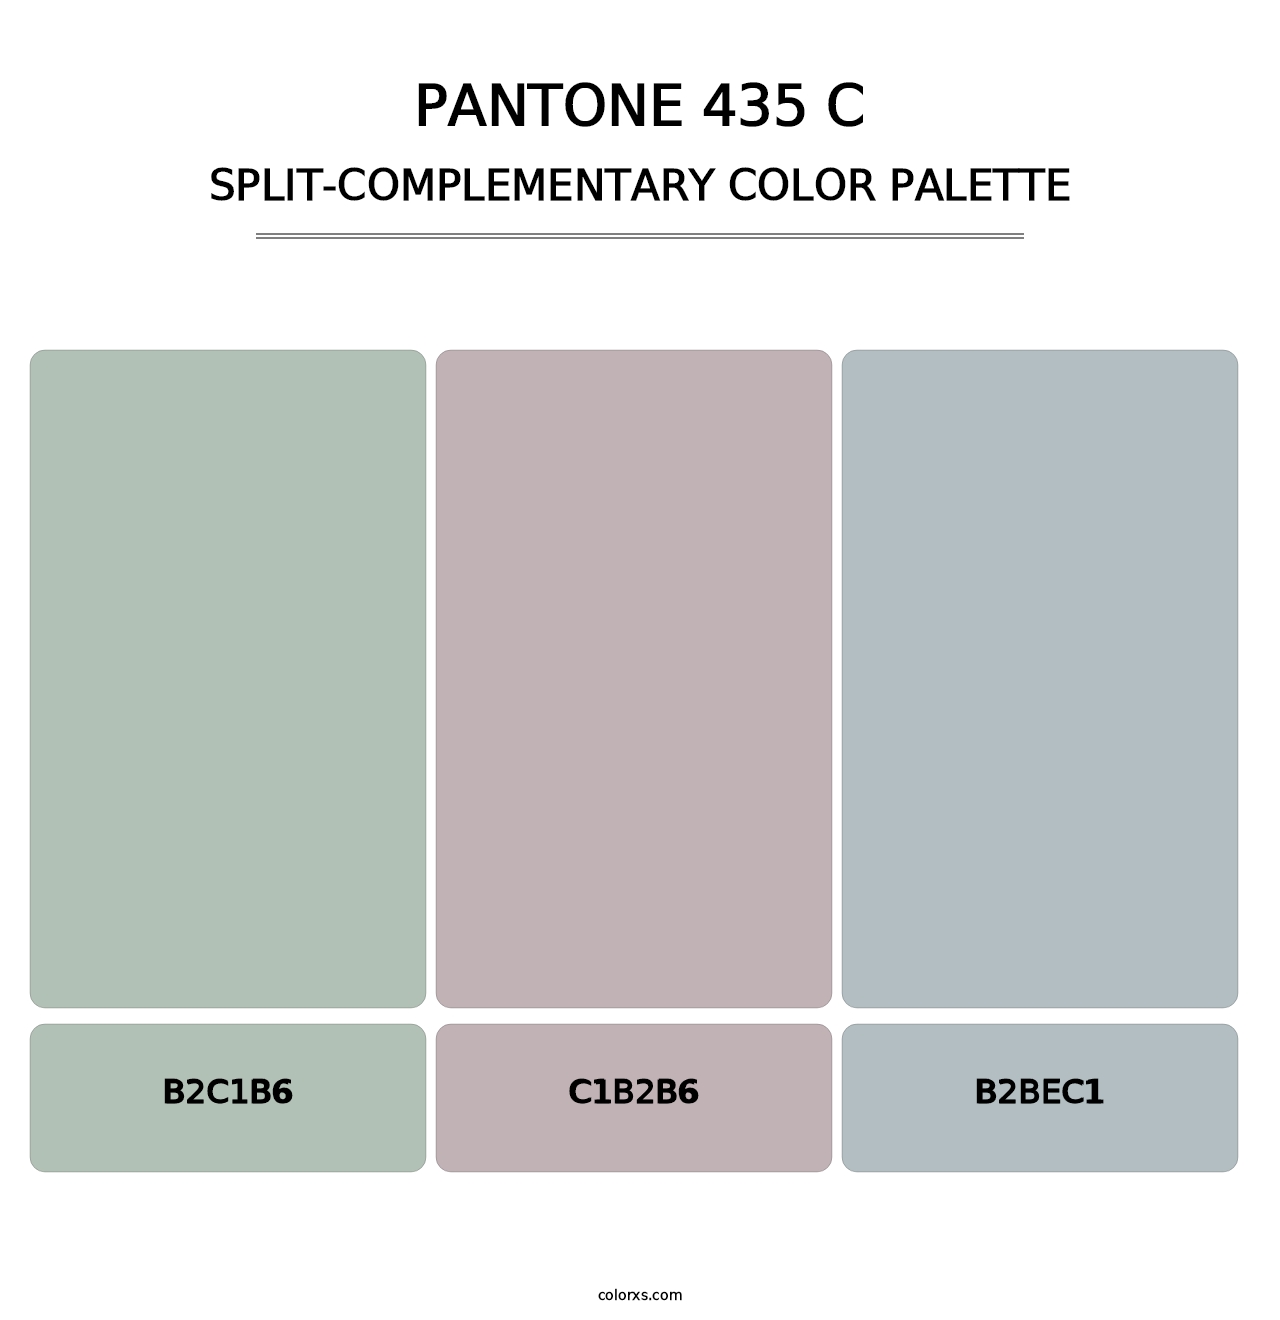 PANTONE 435 C - Split-Complementary Color Palette